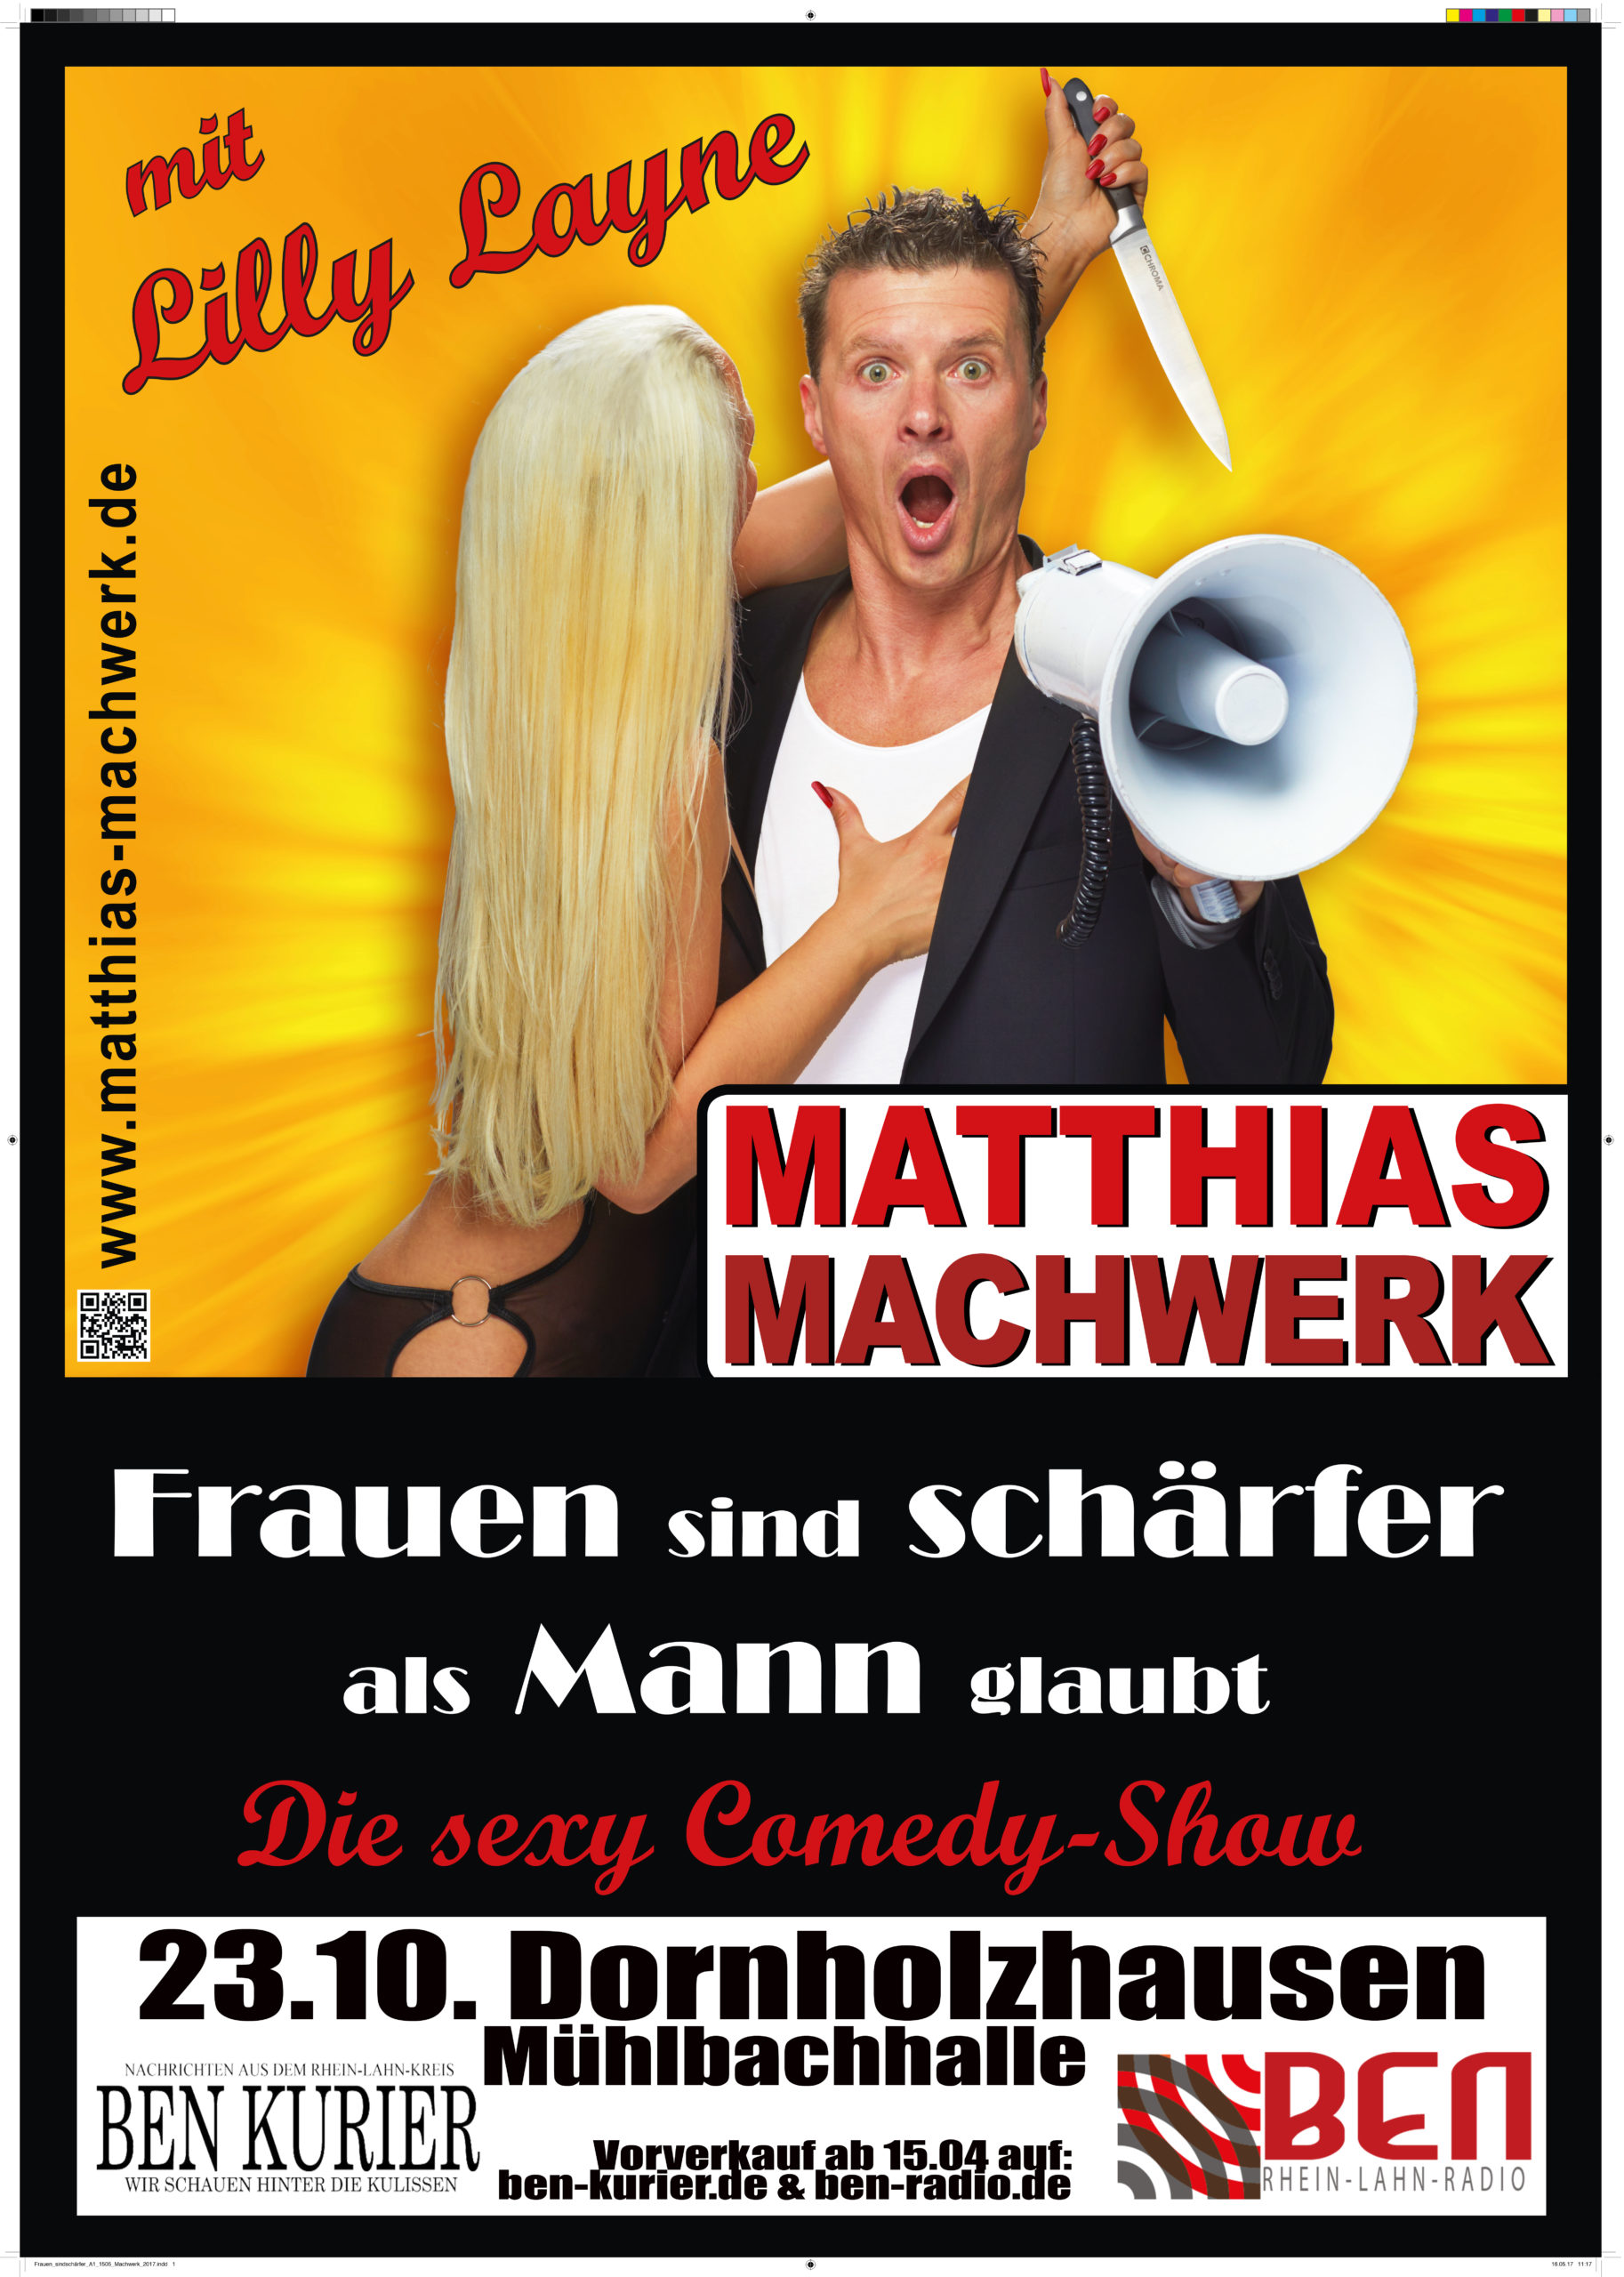 Frauen sind schärfer, als Mann glaubt - Die sexy Comedy Show mit Matthias Machwerk